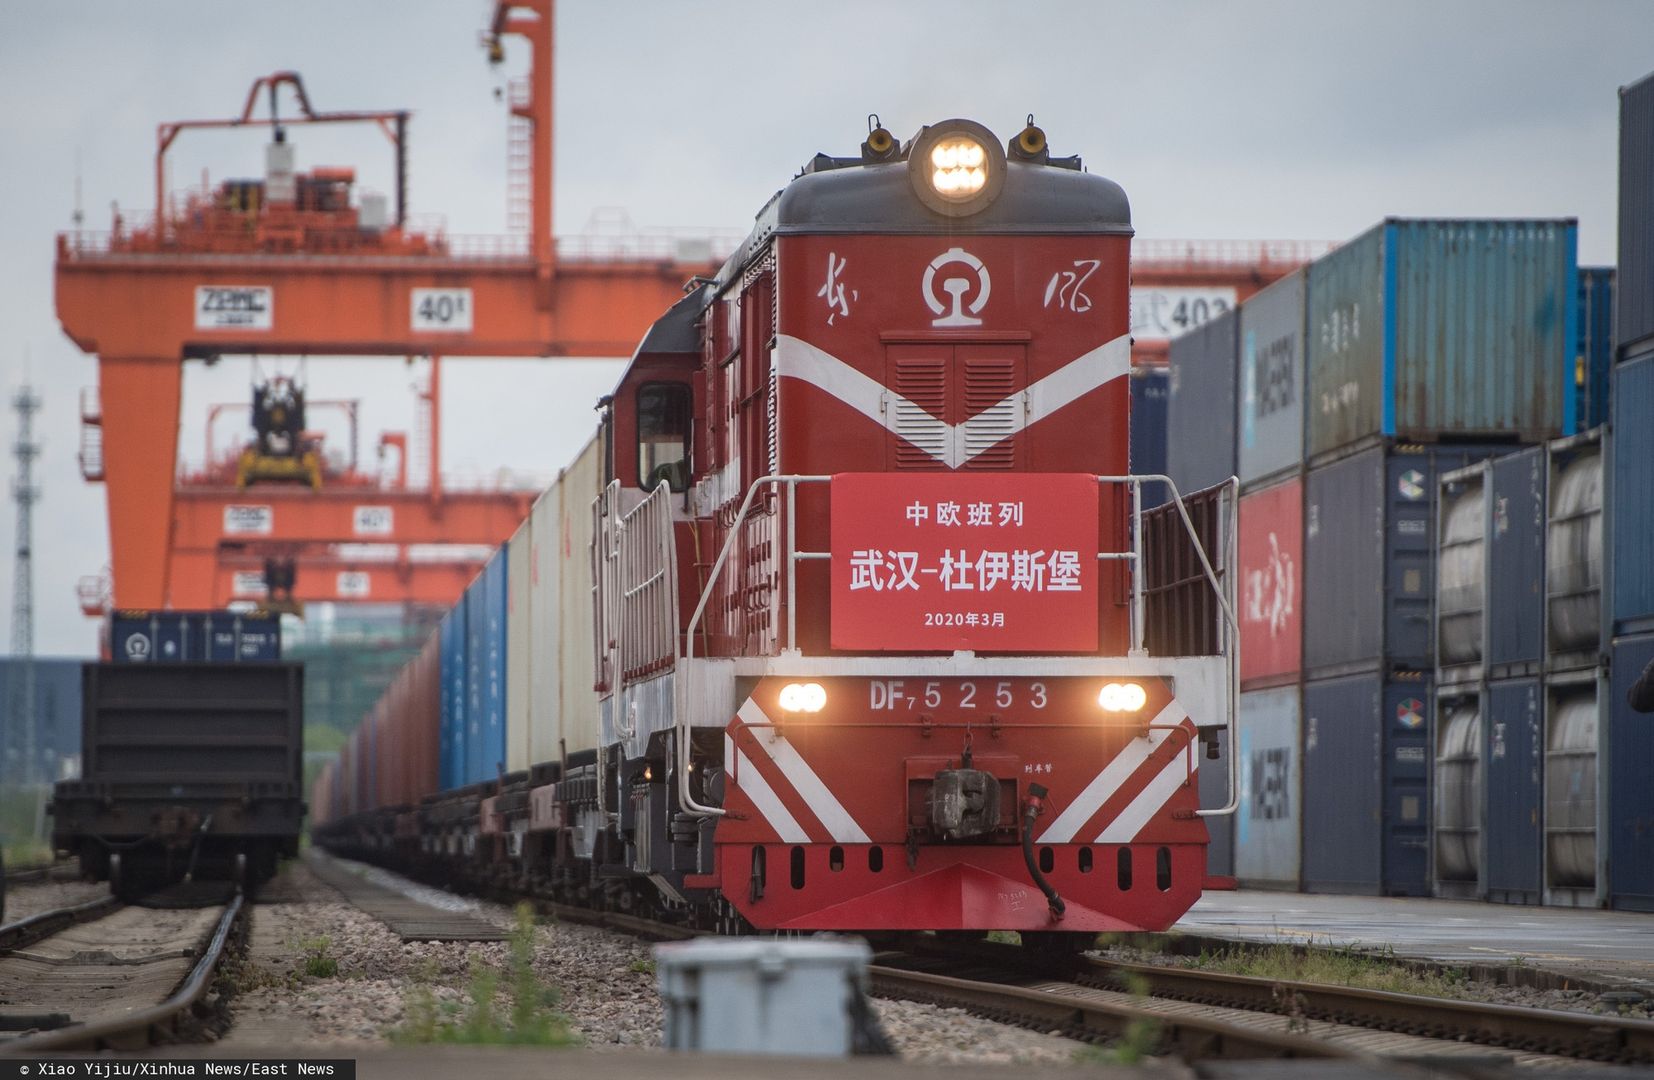 Pociąg towarowy Chiny-Europa zmierzający do Niemiec wyruszył Wuhan.